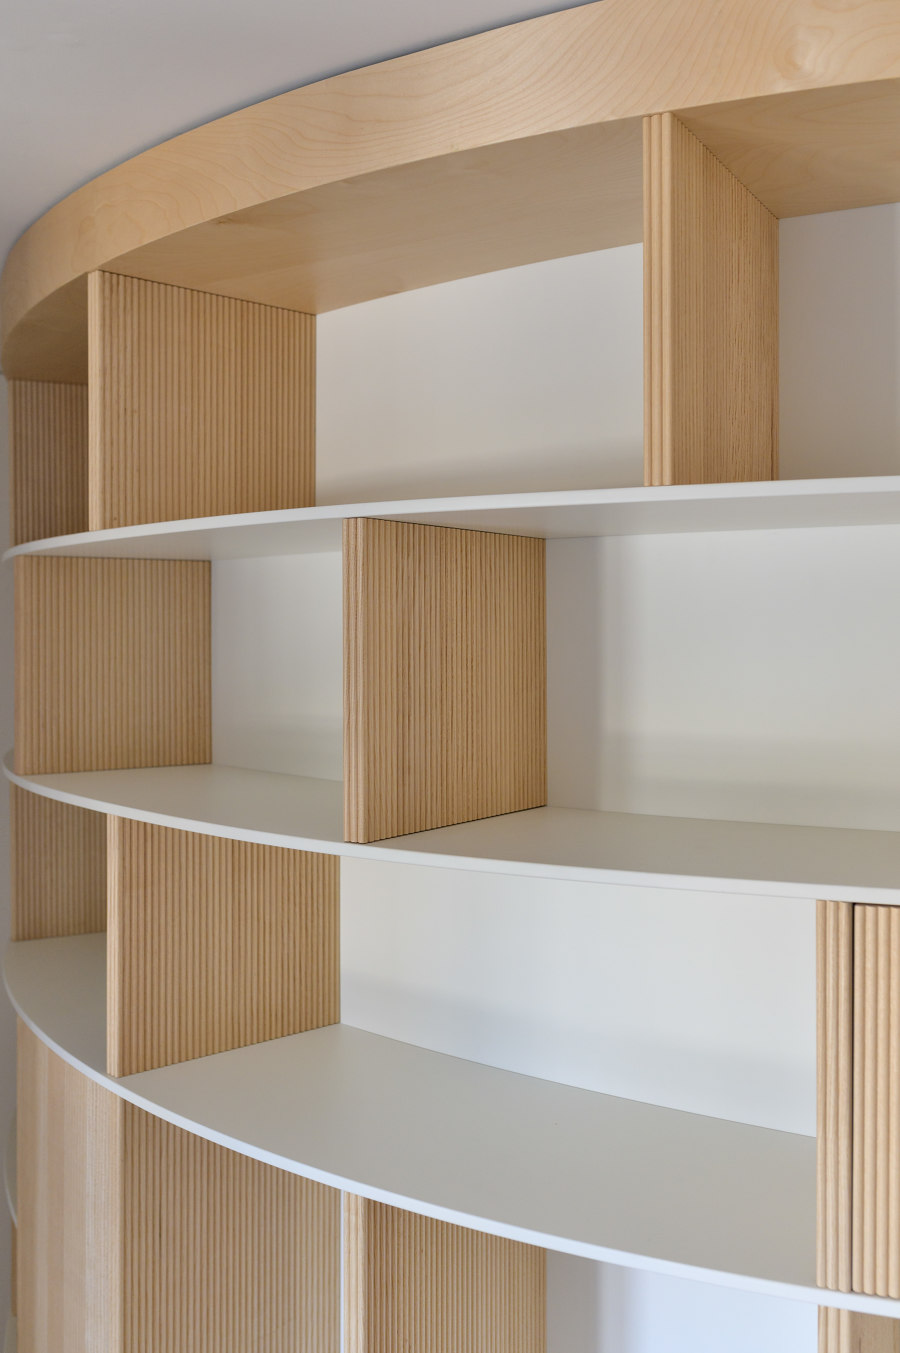 Apartment with a Library de Olbos Studio | Espacios habitables